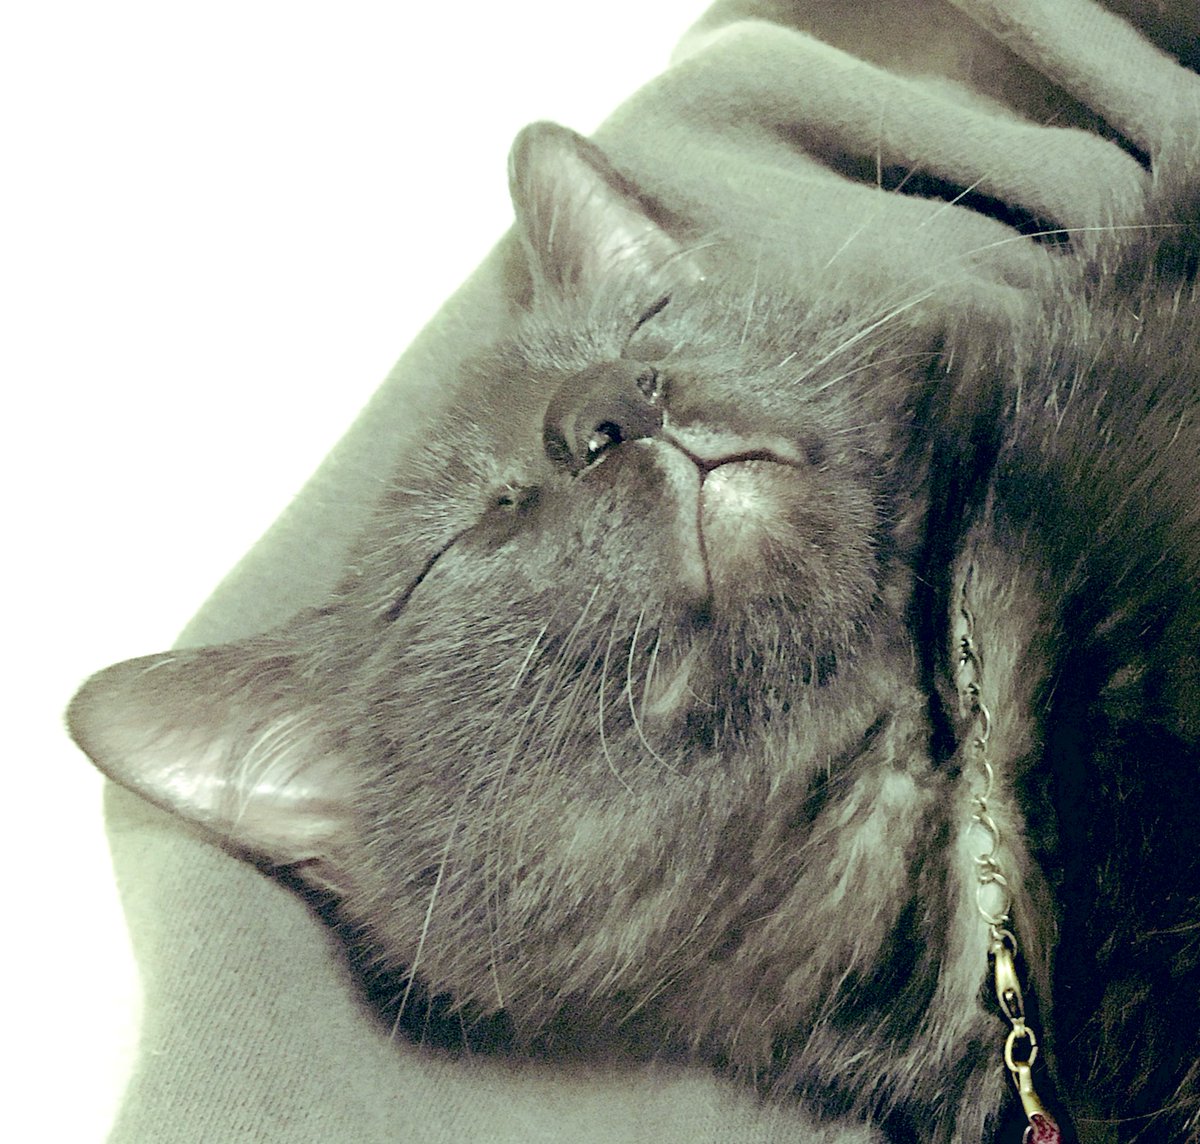 胸の上で寝る猫。
かわいい。 